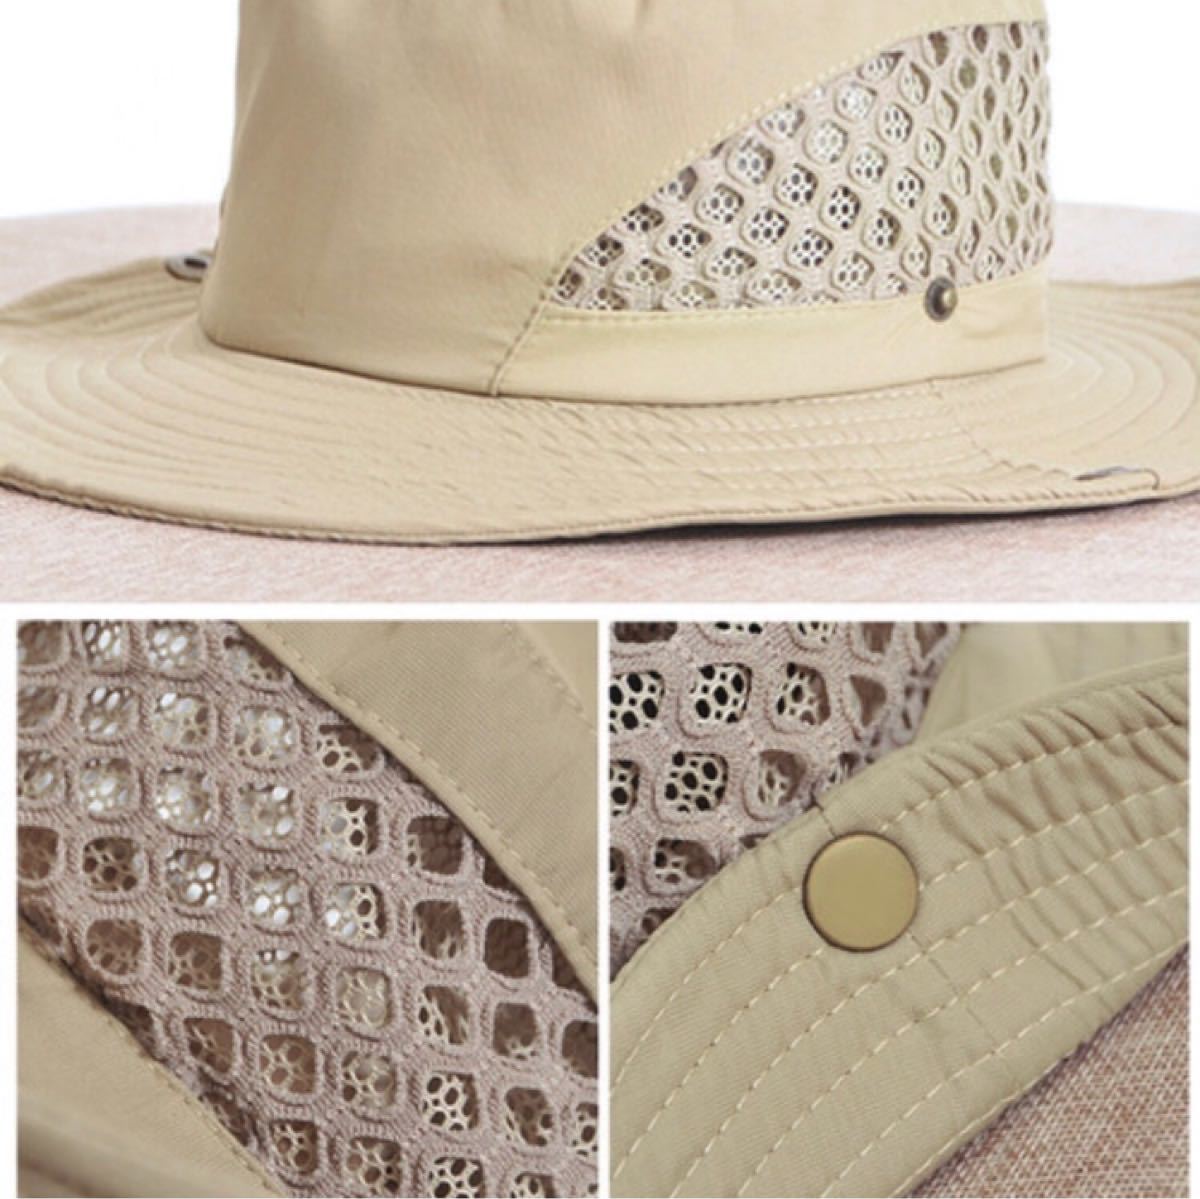 メンズ　レーディス　帽子　ハット　メッシュ　通気性　アウトドア　釣り　キャンプ UVカット サファリハット 日焼け防止 紫外線対策